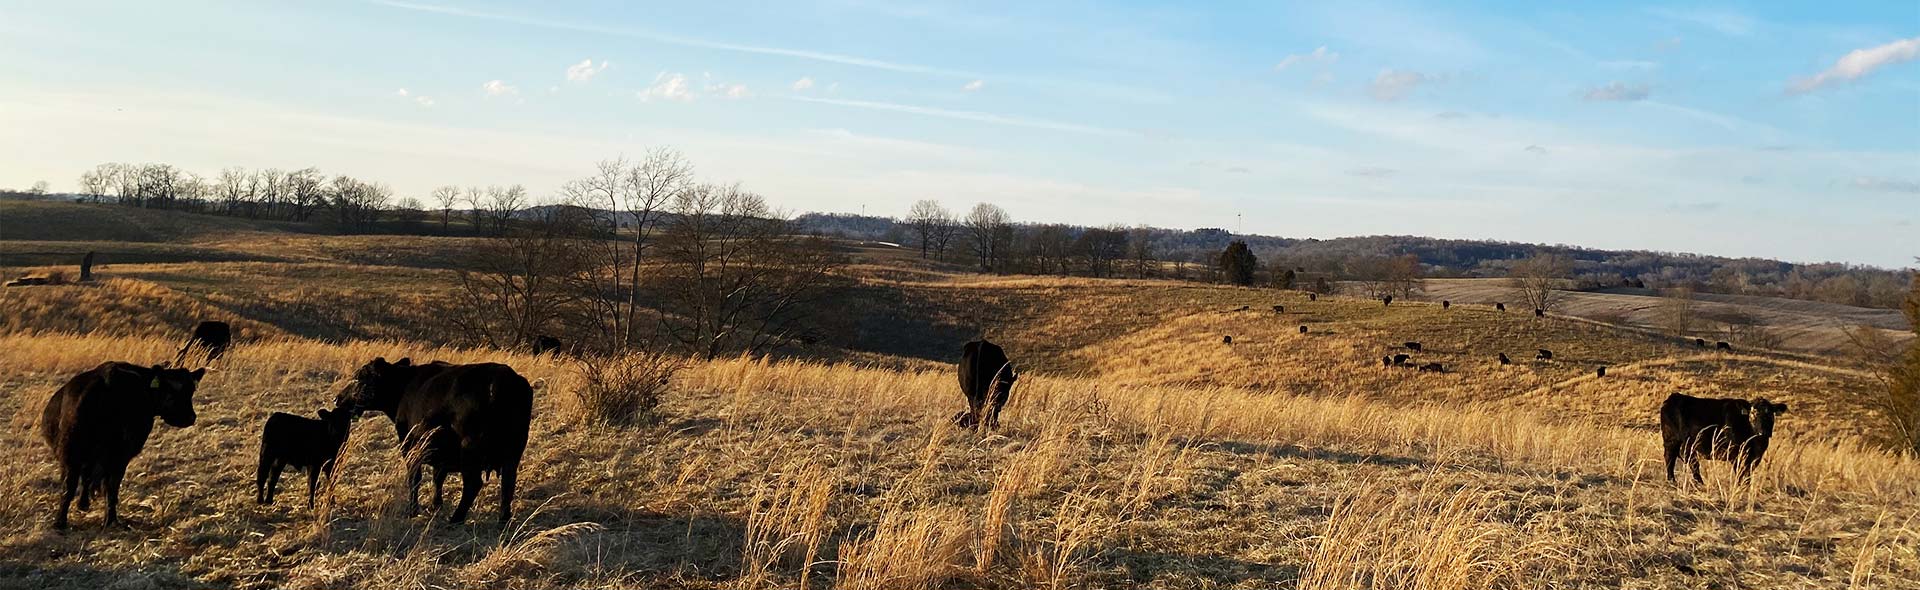 Cows in a field in winter